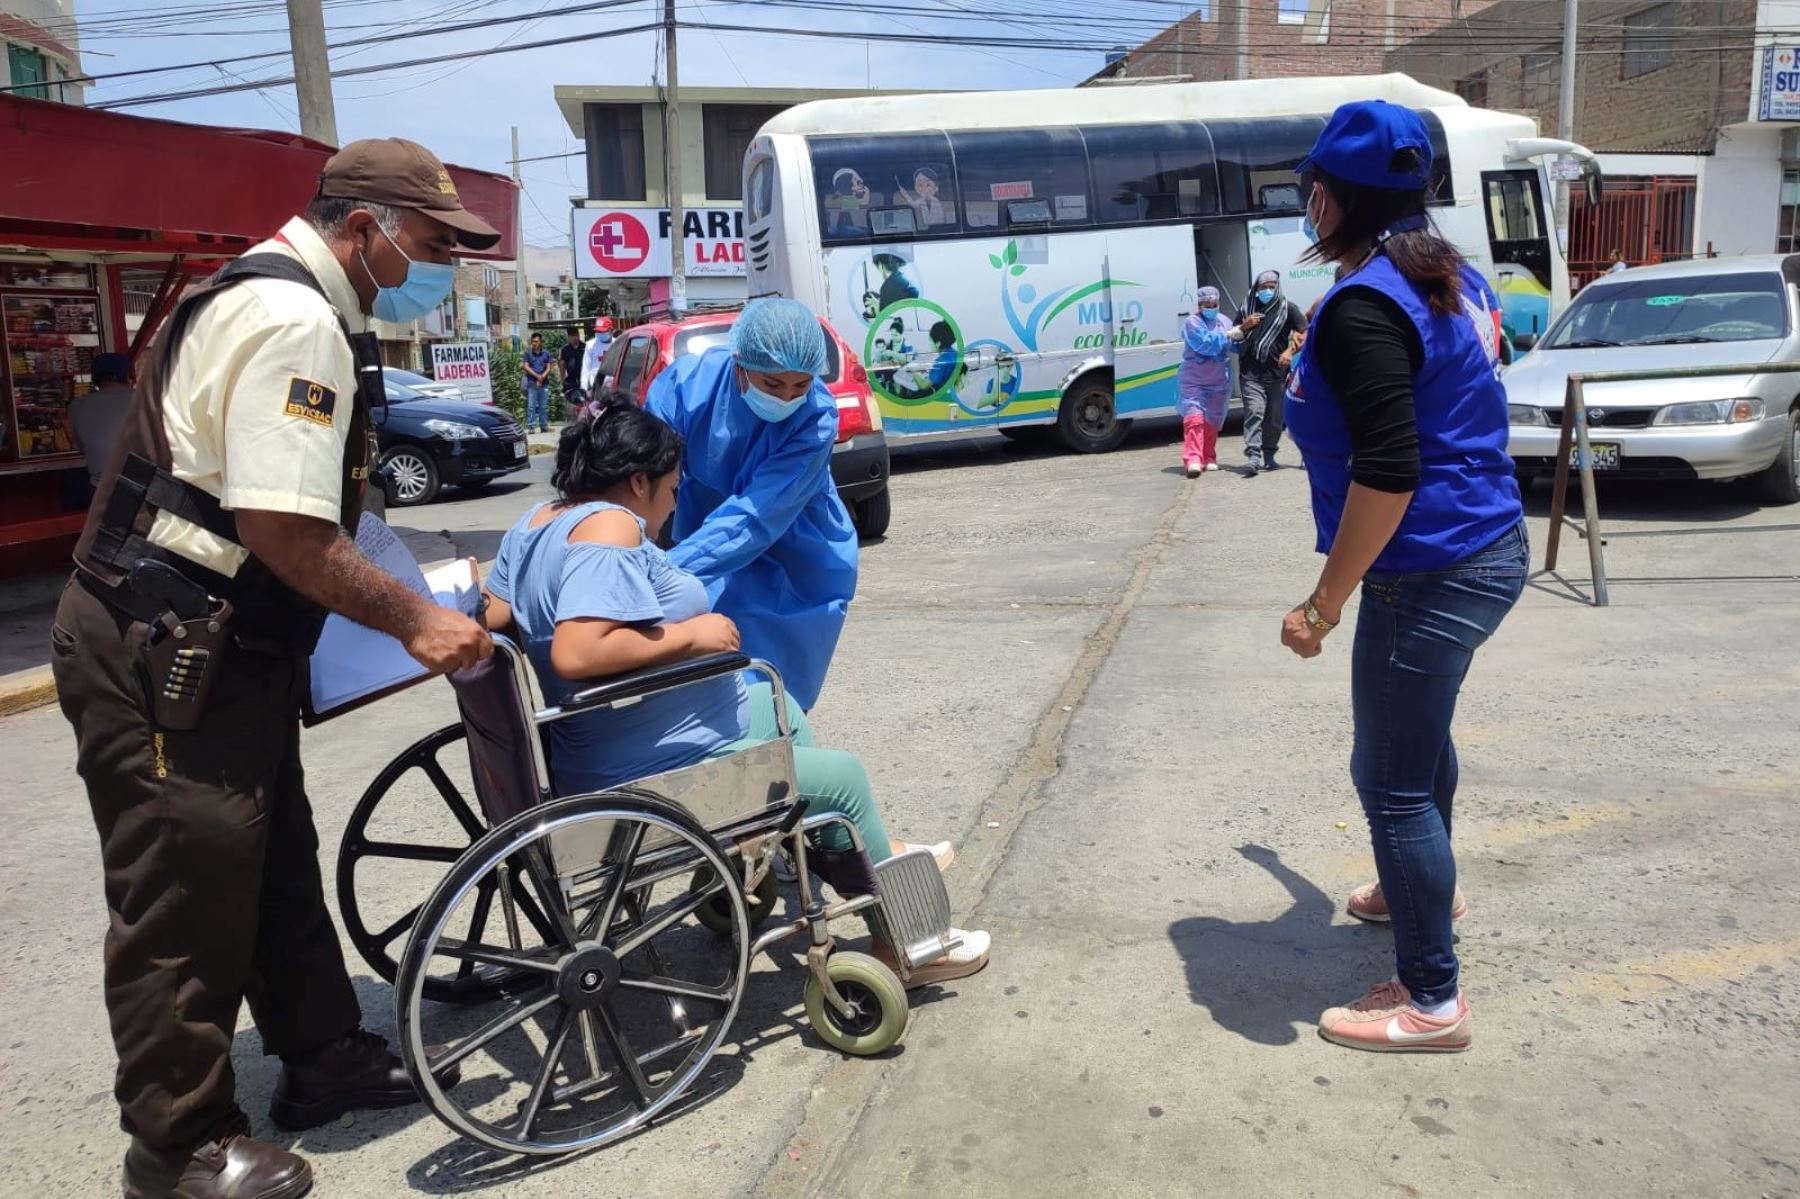 Los pacientes tenían como destino la ciudad de Trujillo; sin embargo, debido a la obstrucción en la carretera optaron por permanecer en Chimbote hasta que las vías sean liberadas.